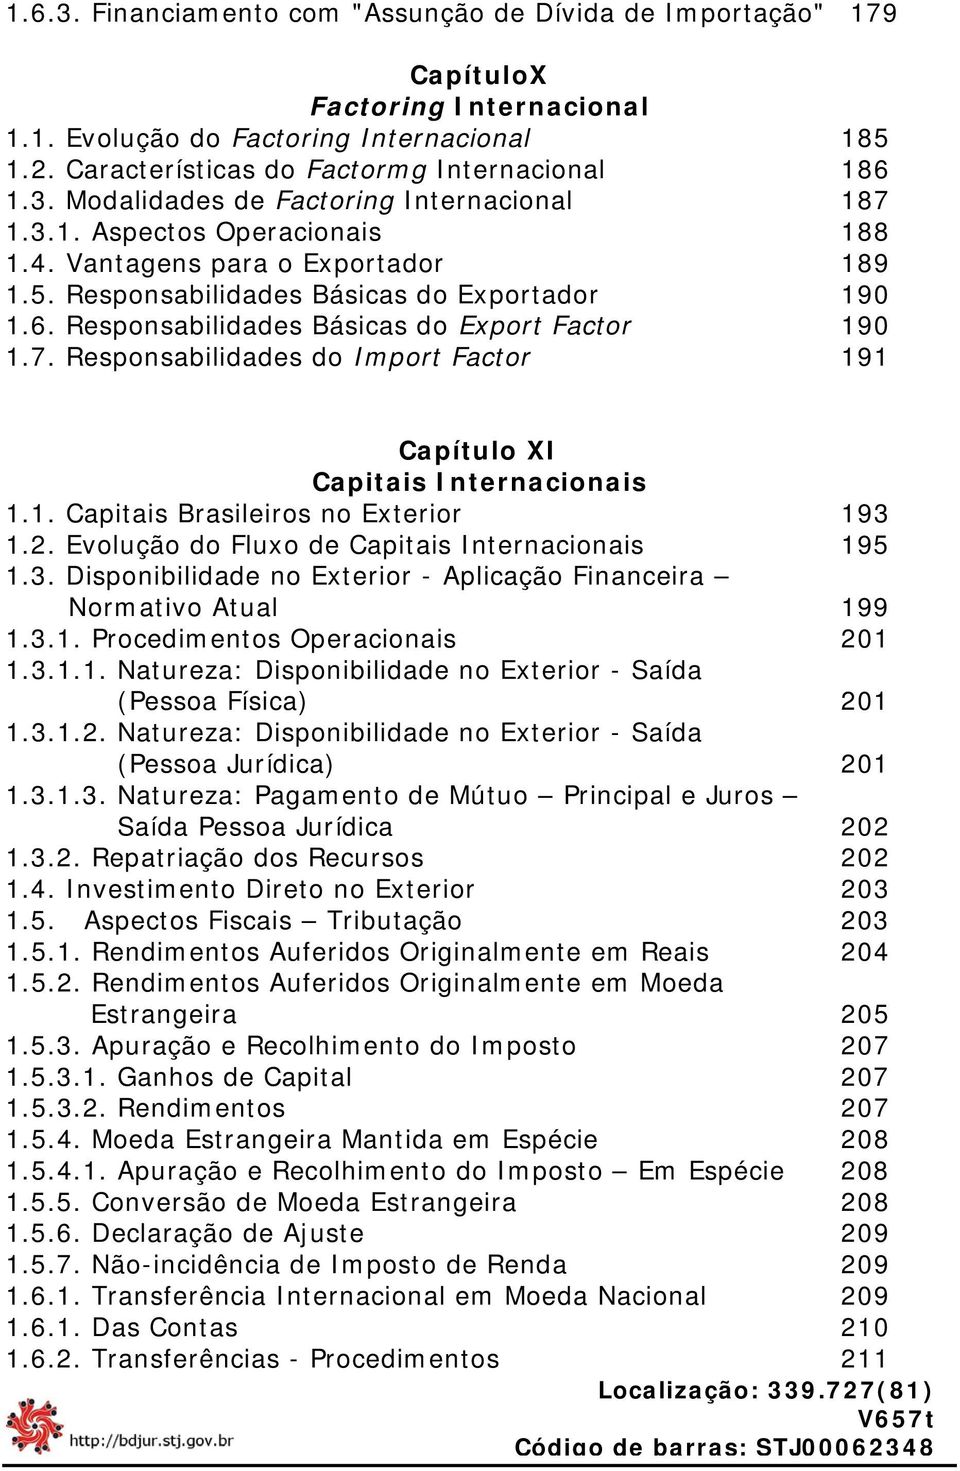 Responsabilidades do Import Factor 191 Capítulo XI Capitais Internacionais 1.1. Capitais Brasileiros no Exterior 193 1.2. Evolução do Fluxo de Capitais Internacionais 195 1.3. Disponibilidade no Exterior - Aplicação Financeira Normativo Atual 199 1.